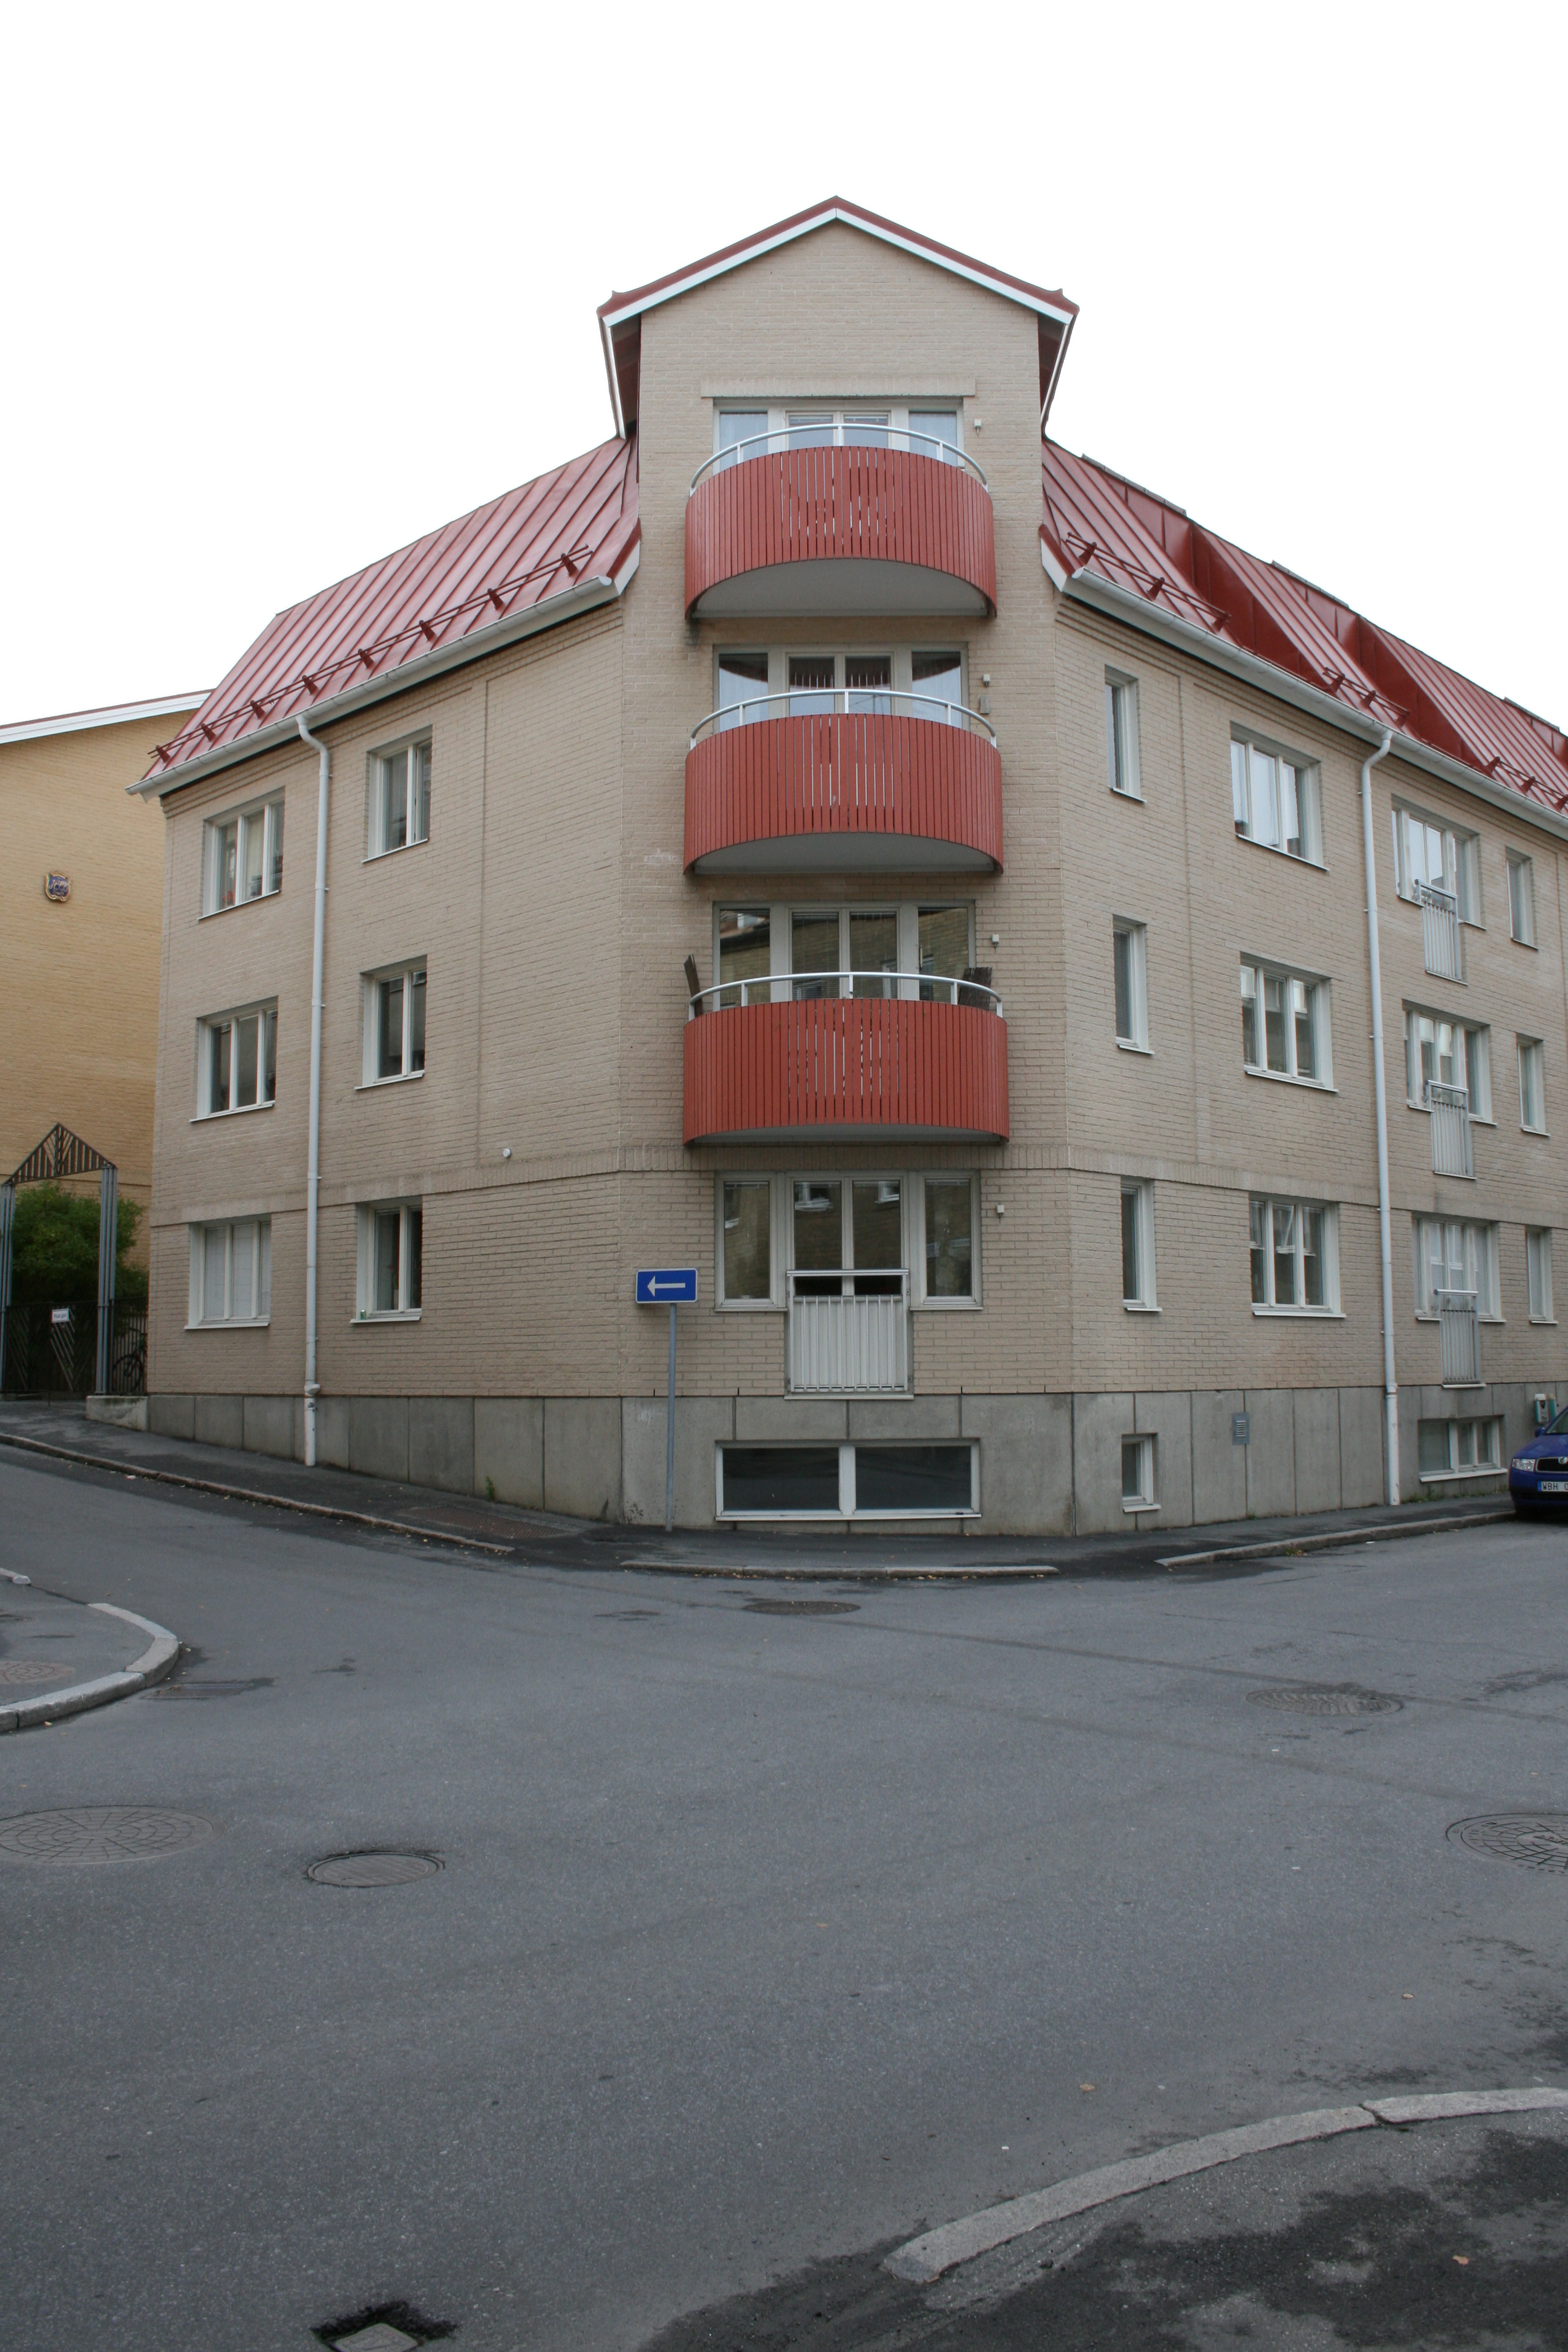 Riksbanken 1, hus 1. Hörn mot NV.